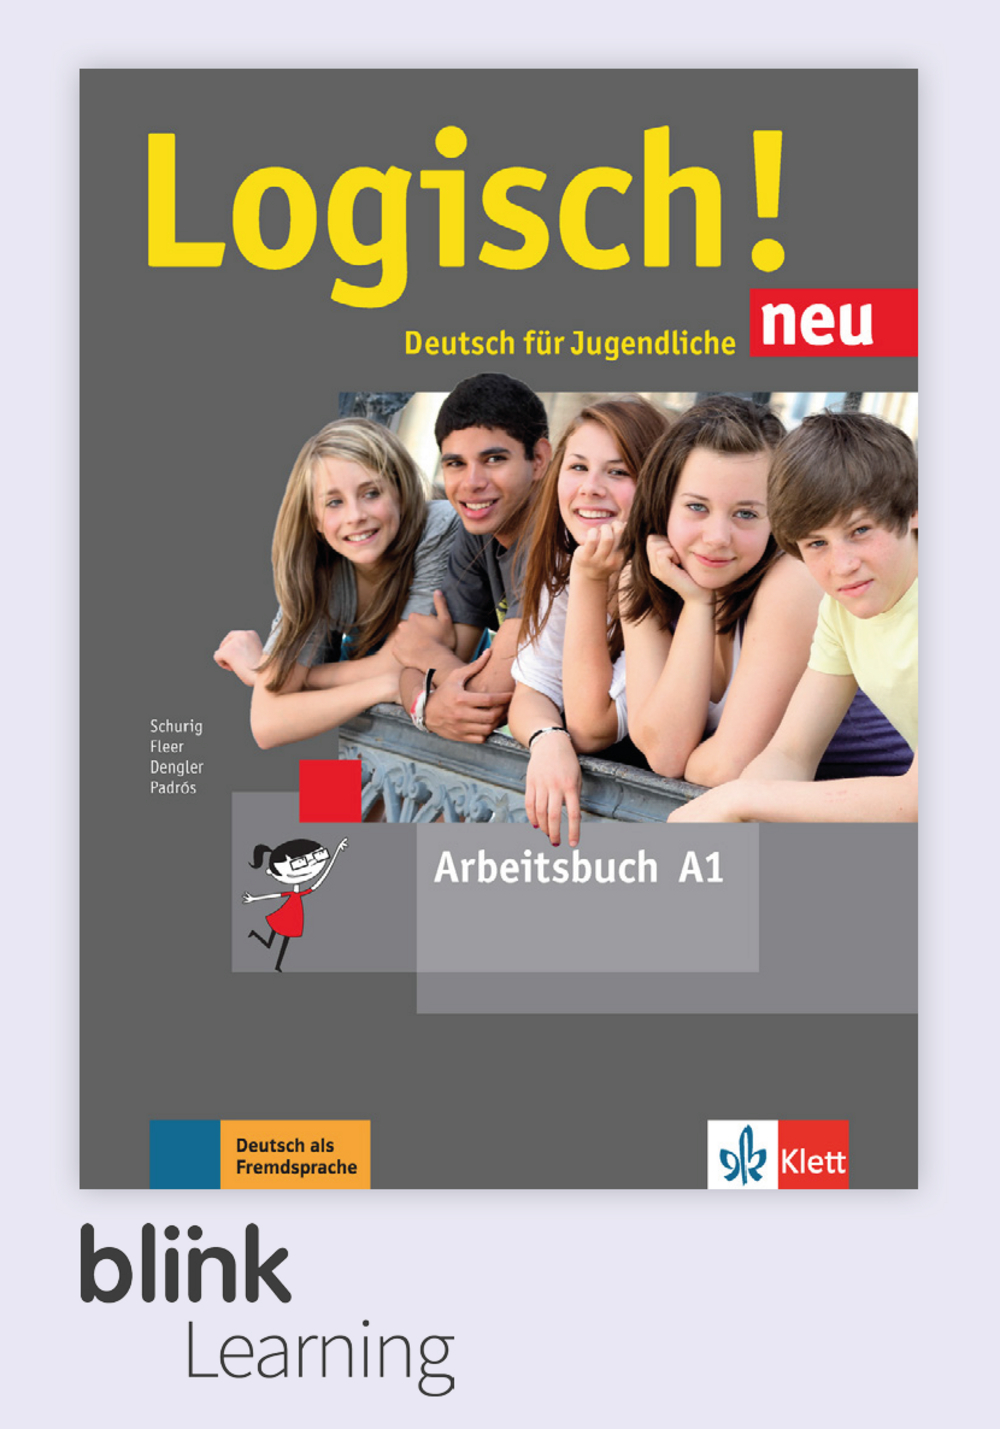 Logisch! neu A1 Digital Arbeitsbuch fur Unterrichtende / Цифровая рабочая тетрадь для учителя